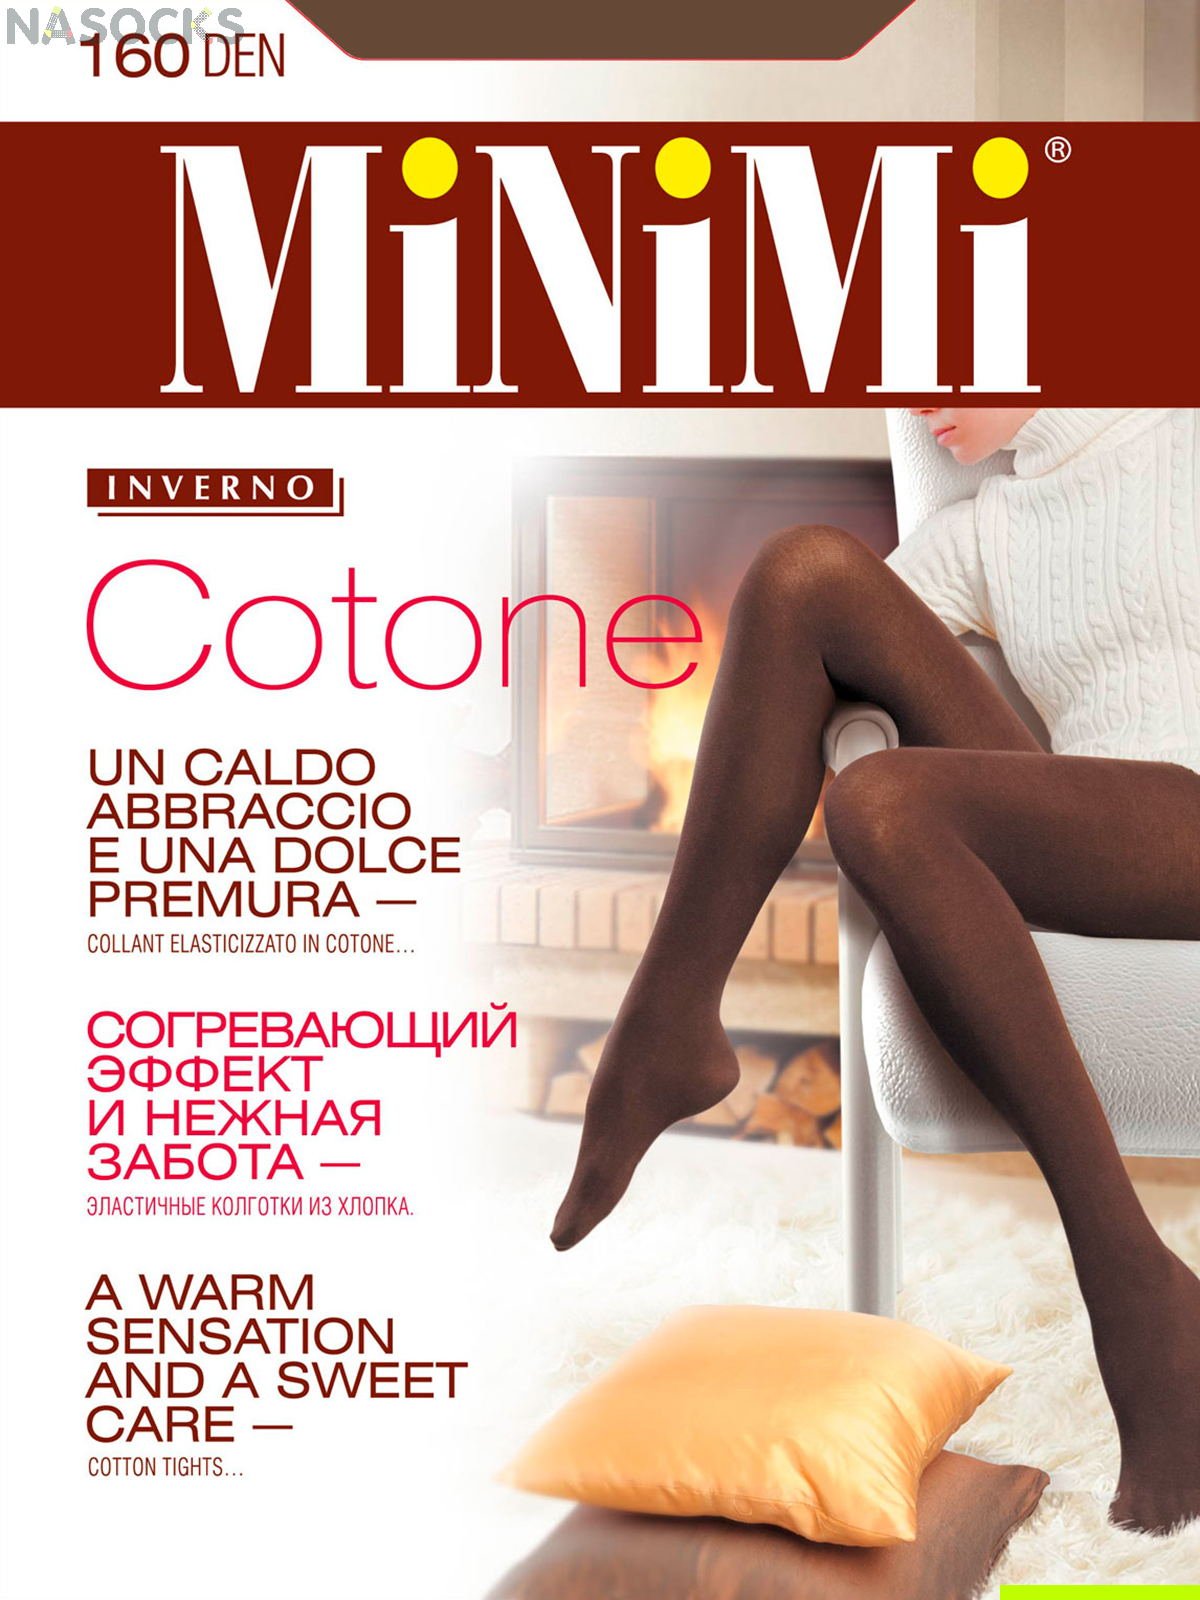 Колготки Minimi Cotone 160 den купить недорого|Бесплатная доставка!